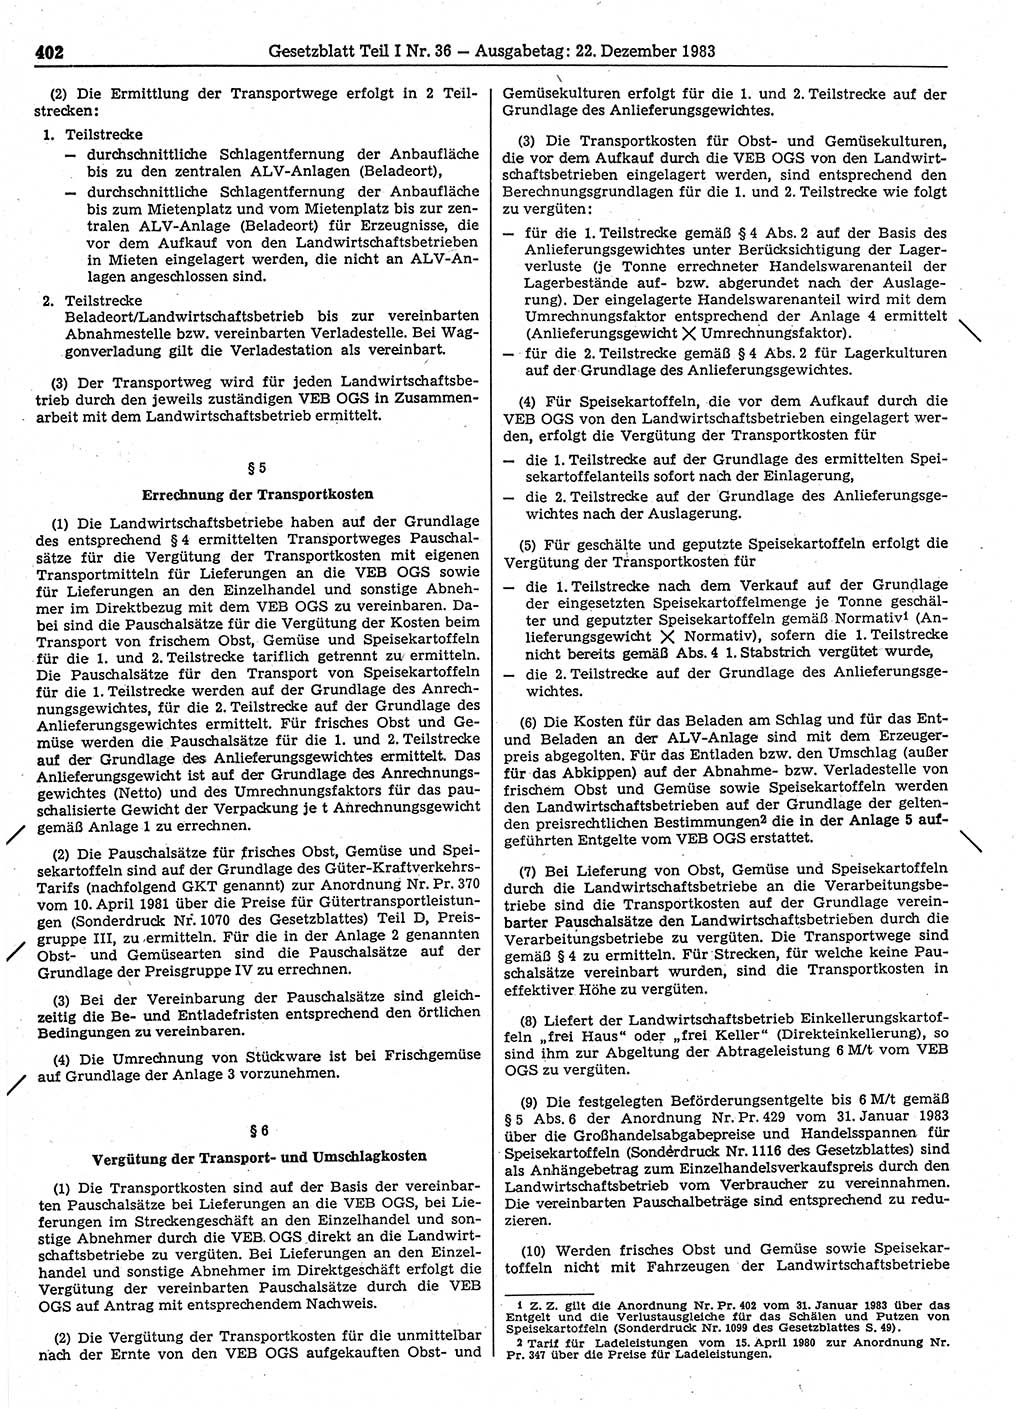 Gesetzblatt (GBl.) der Deutschen Demokratischen Republik (DDR) Teil Ⅰ 1983, Seite 402 (GBl. DDR Ⅰ 1983, S. 402)